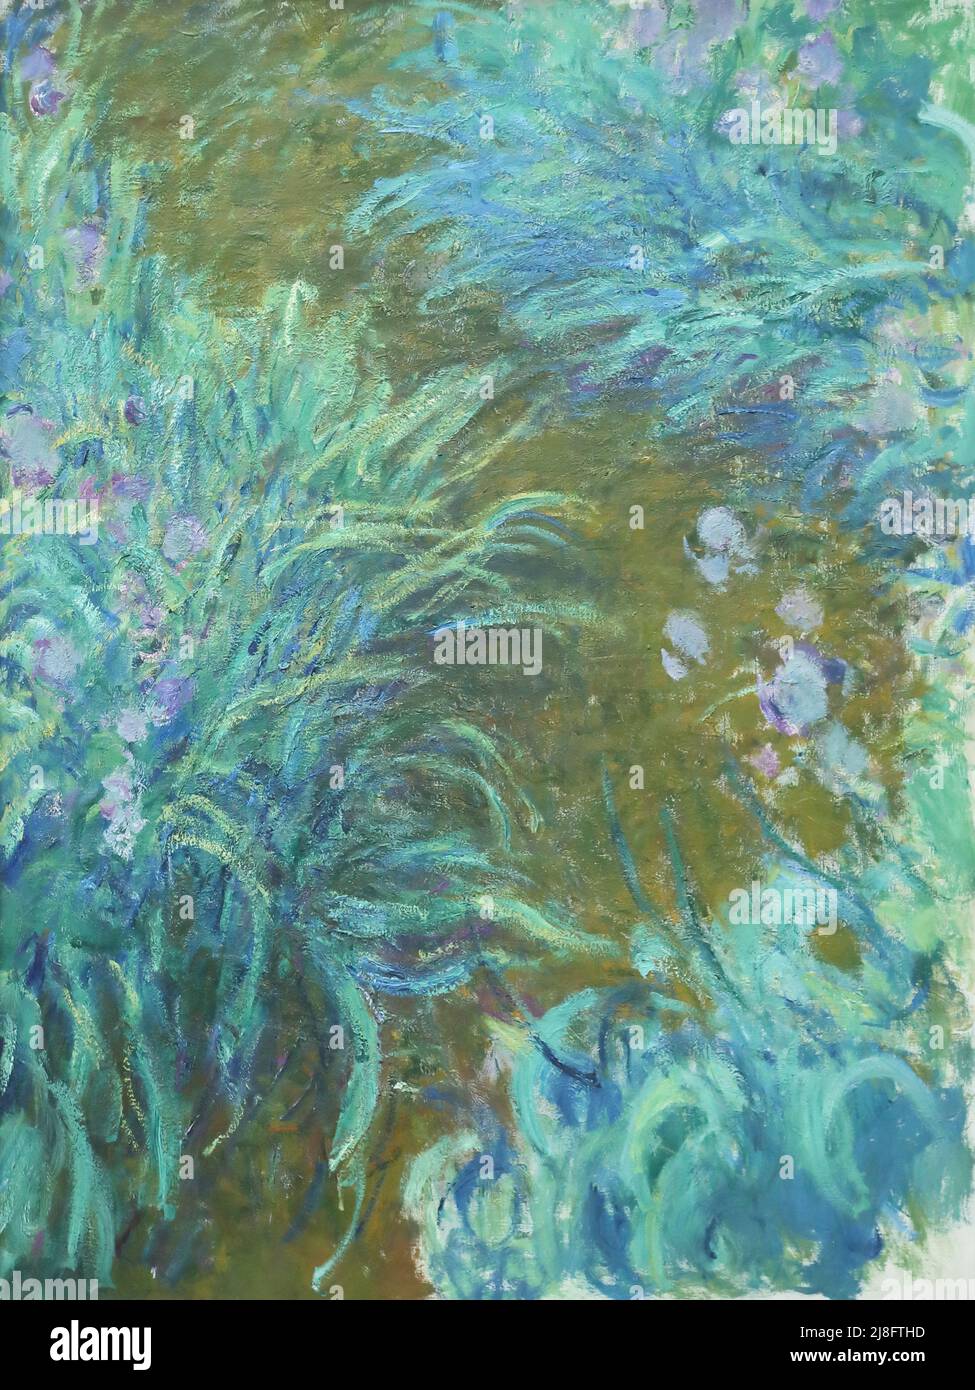 Iris du peintre impressionniste français Claude Monet à la National Gallery, Londres, Royaume-Uni Banque D'Images